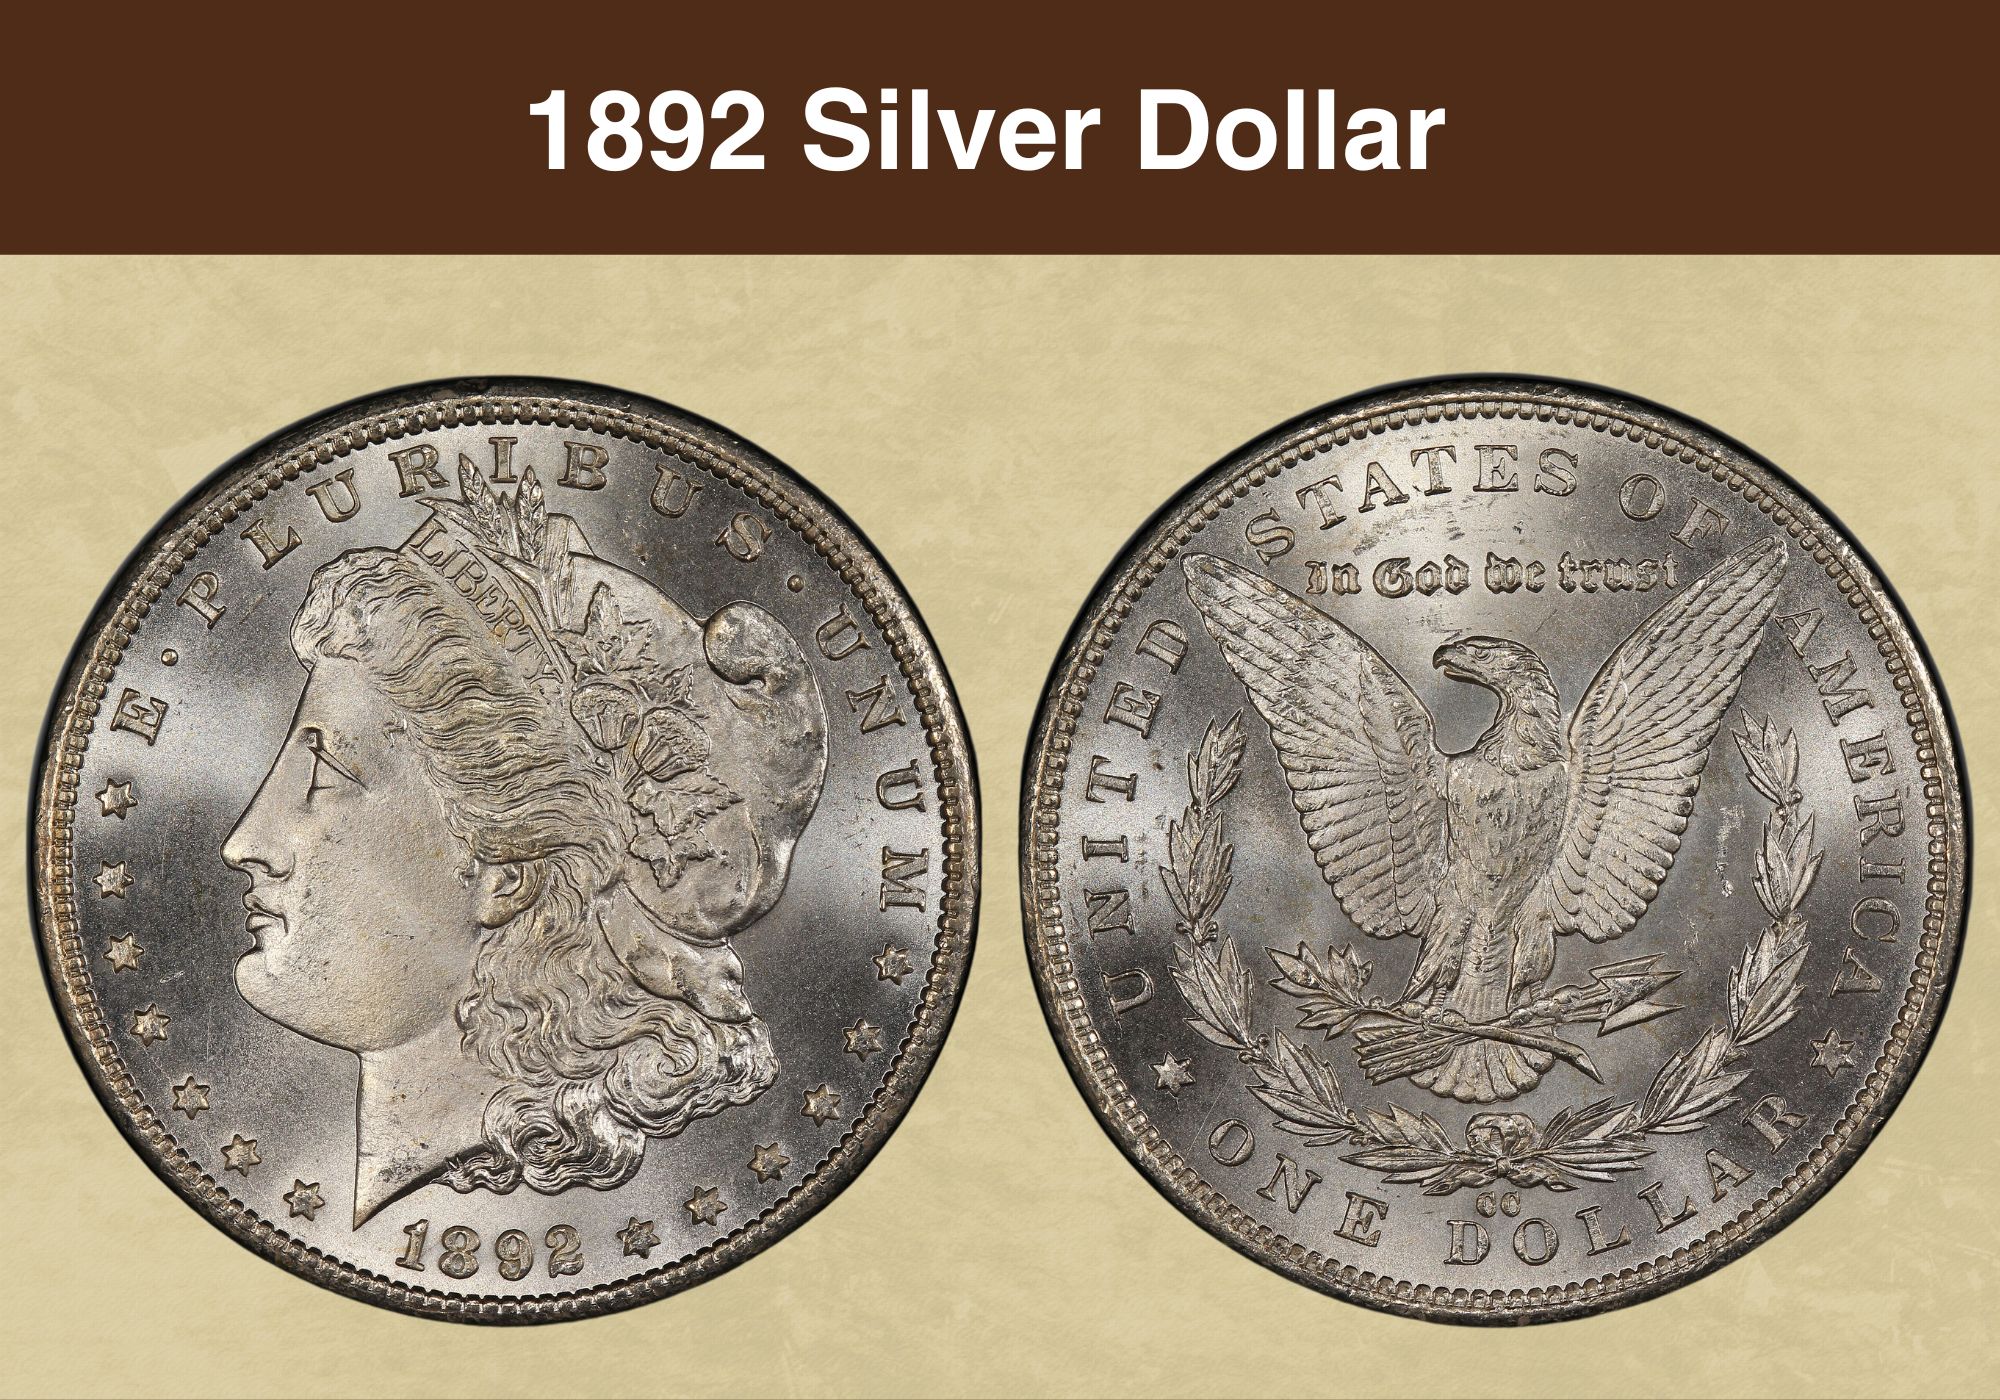 1892 Silver Dollar value